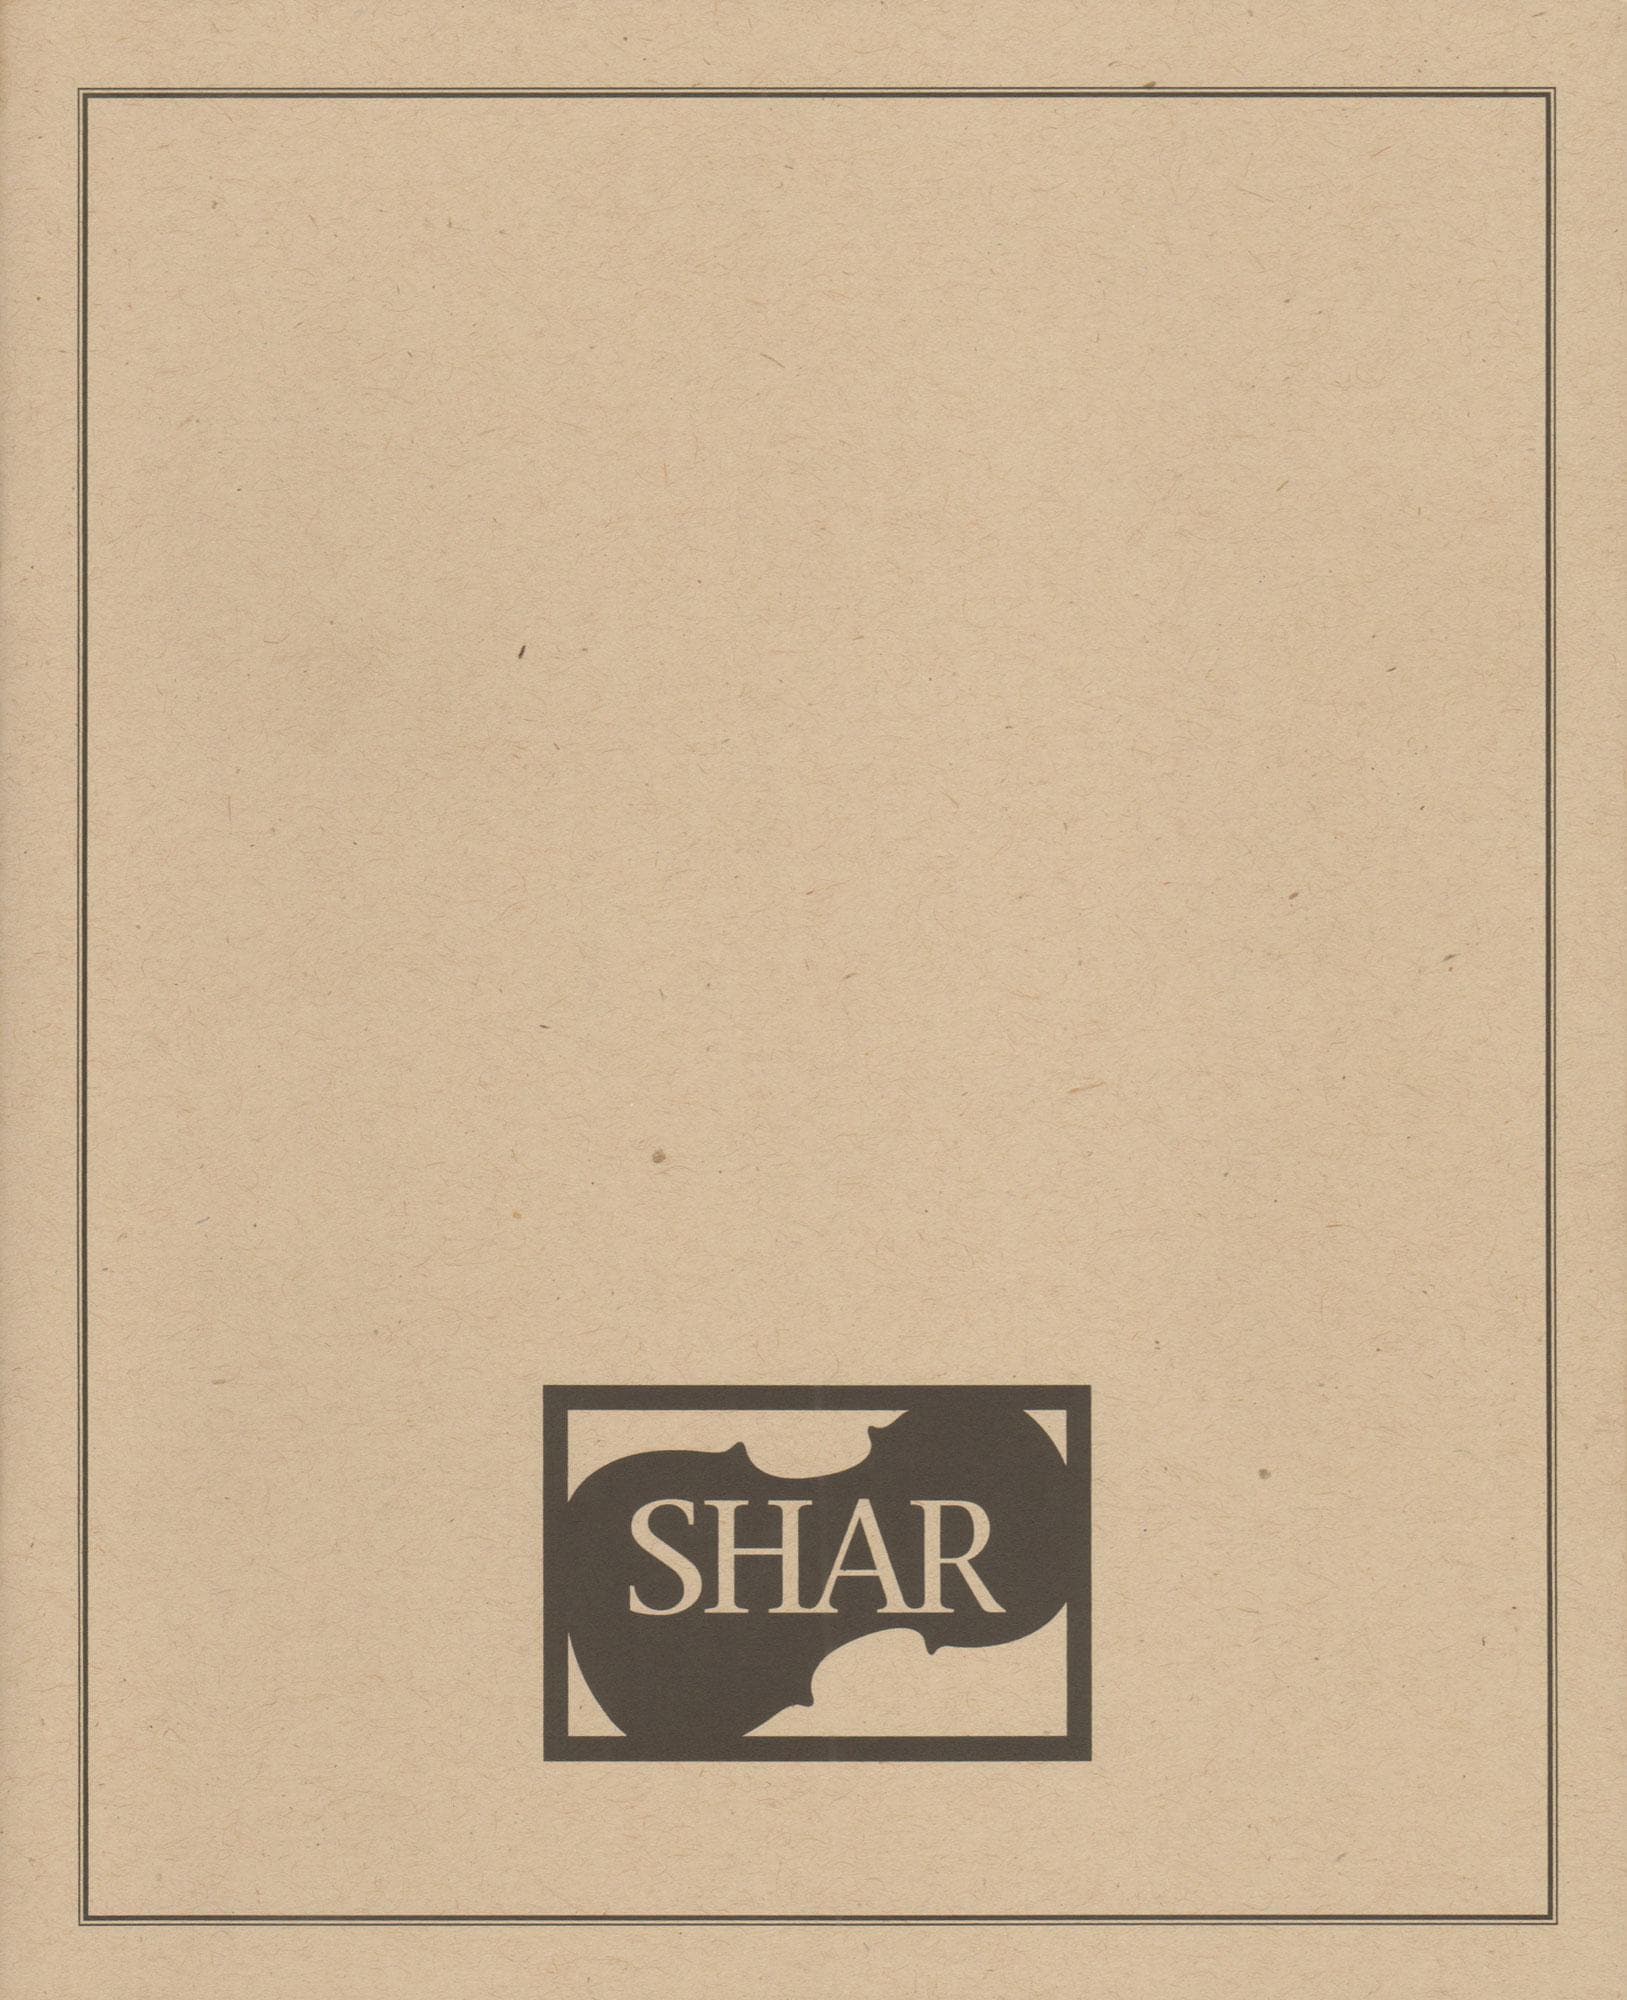 The Little Shar Score Book